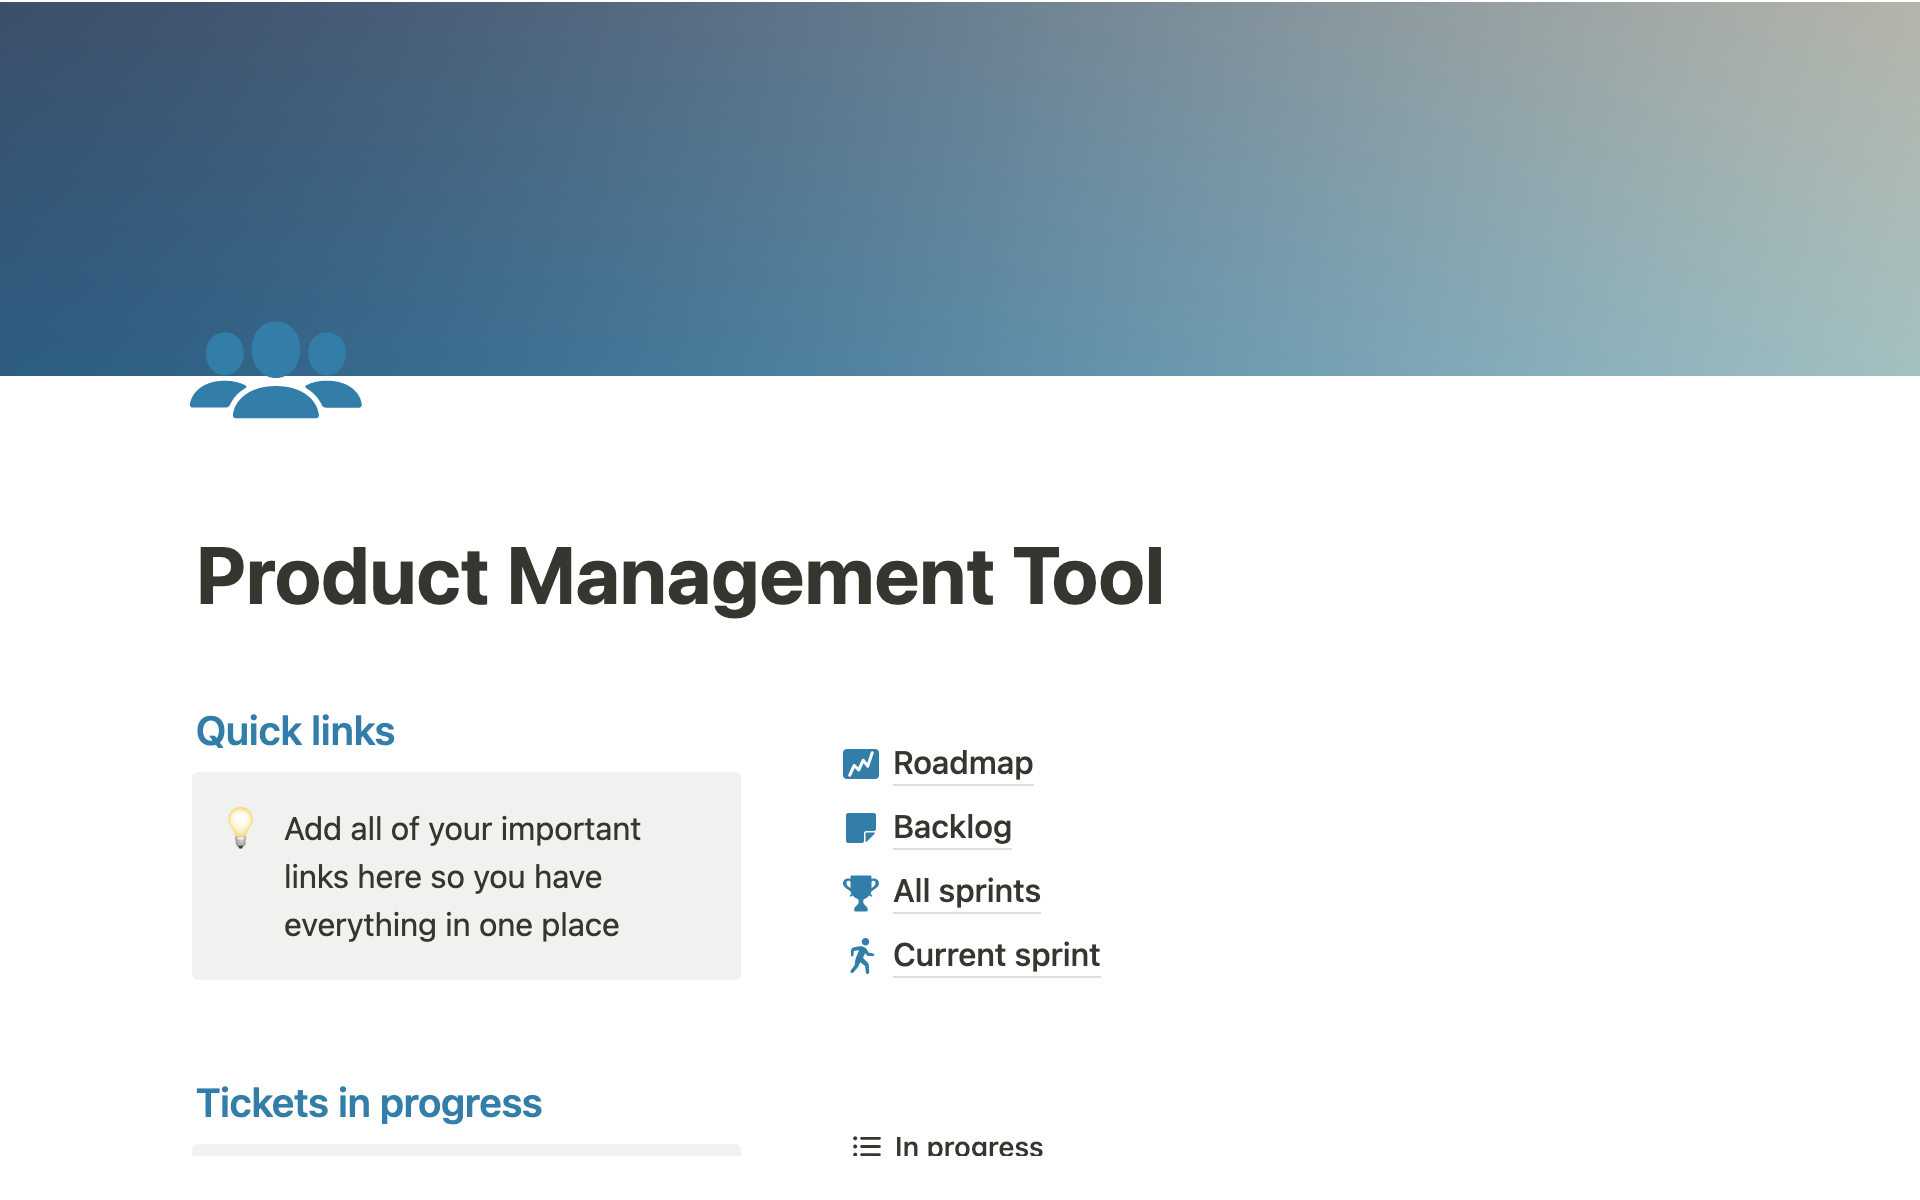 Uma prévia do modelo para Product Management Tool